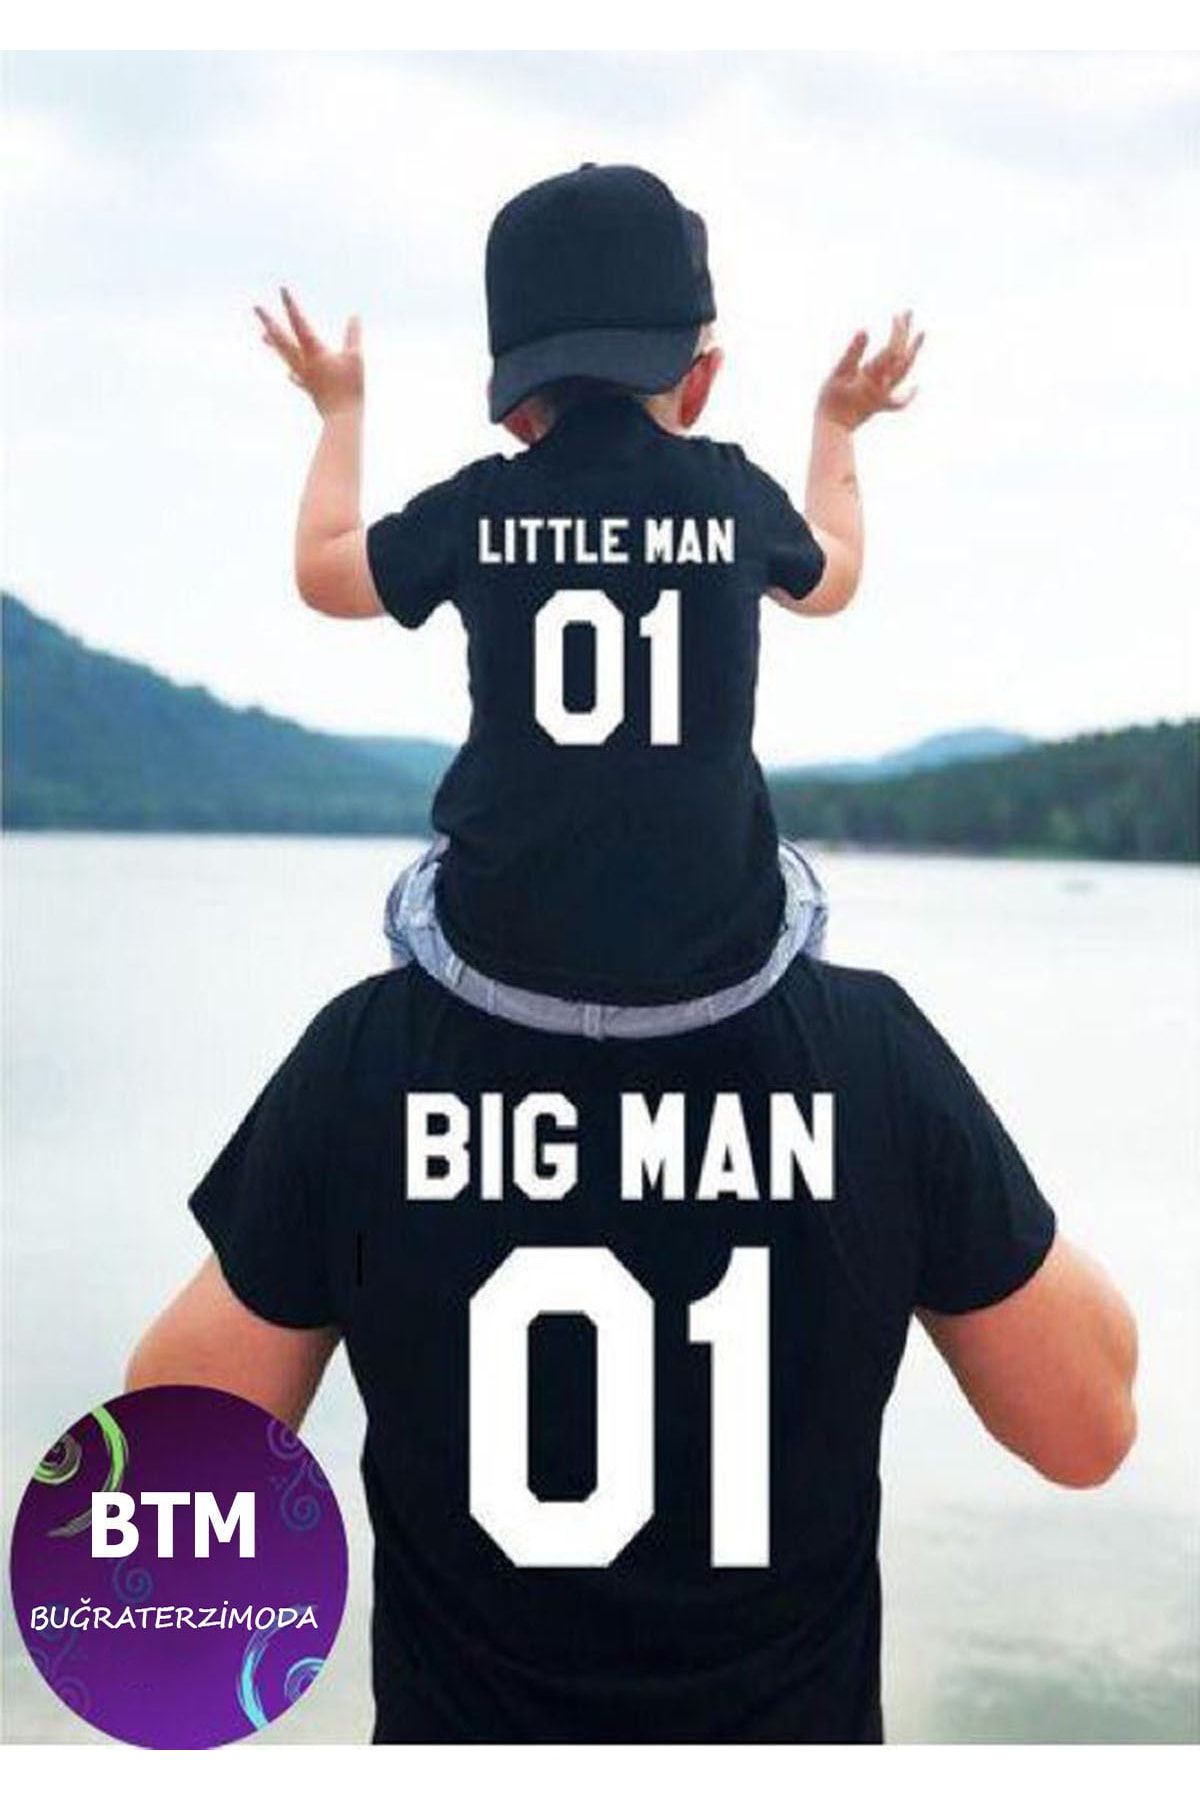 Buğraterzimoda Bigman Littleman Baba Oğul Siyah Regular Tişört Kombin ( 1 Tane Tişört Fiyatıdır )